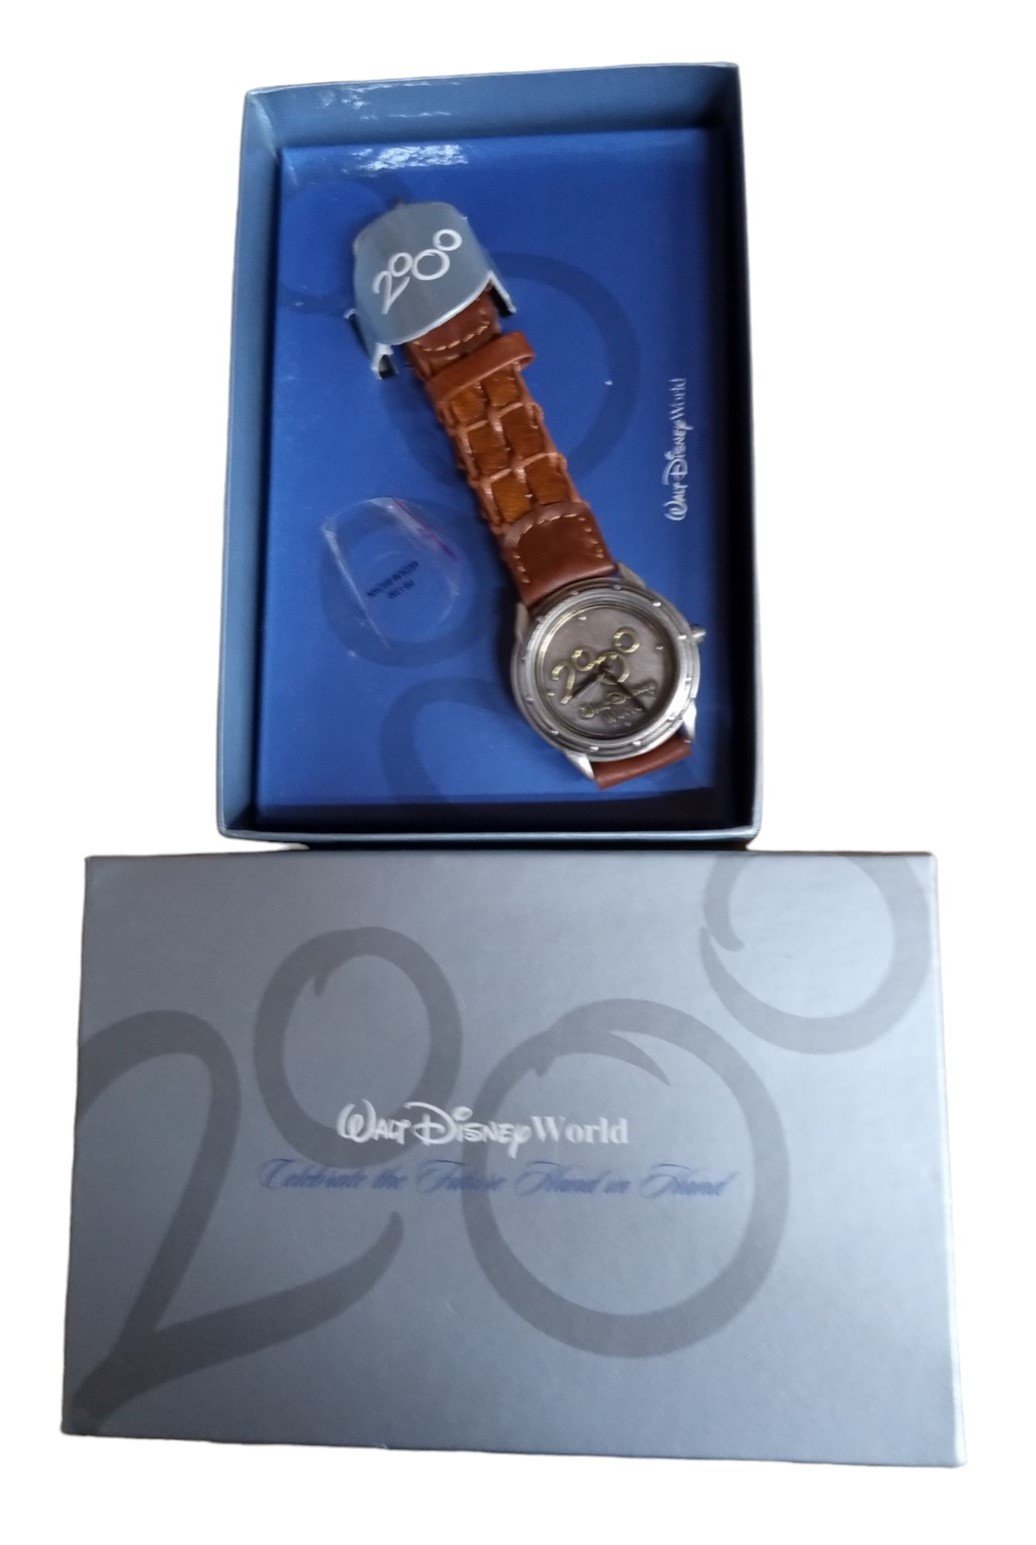 Walt Disney World Millennium Wristwatch With Box Vintage Collectible Wristwear